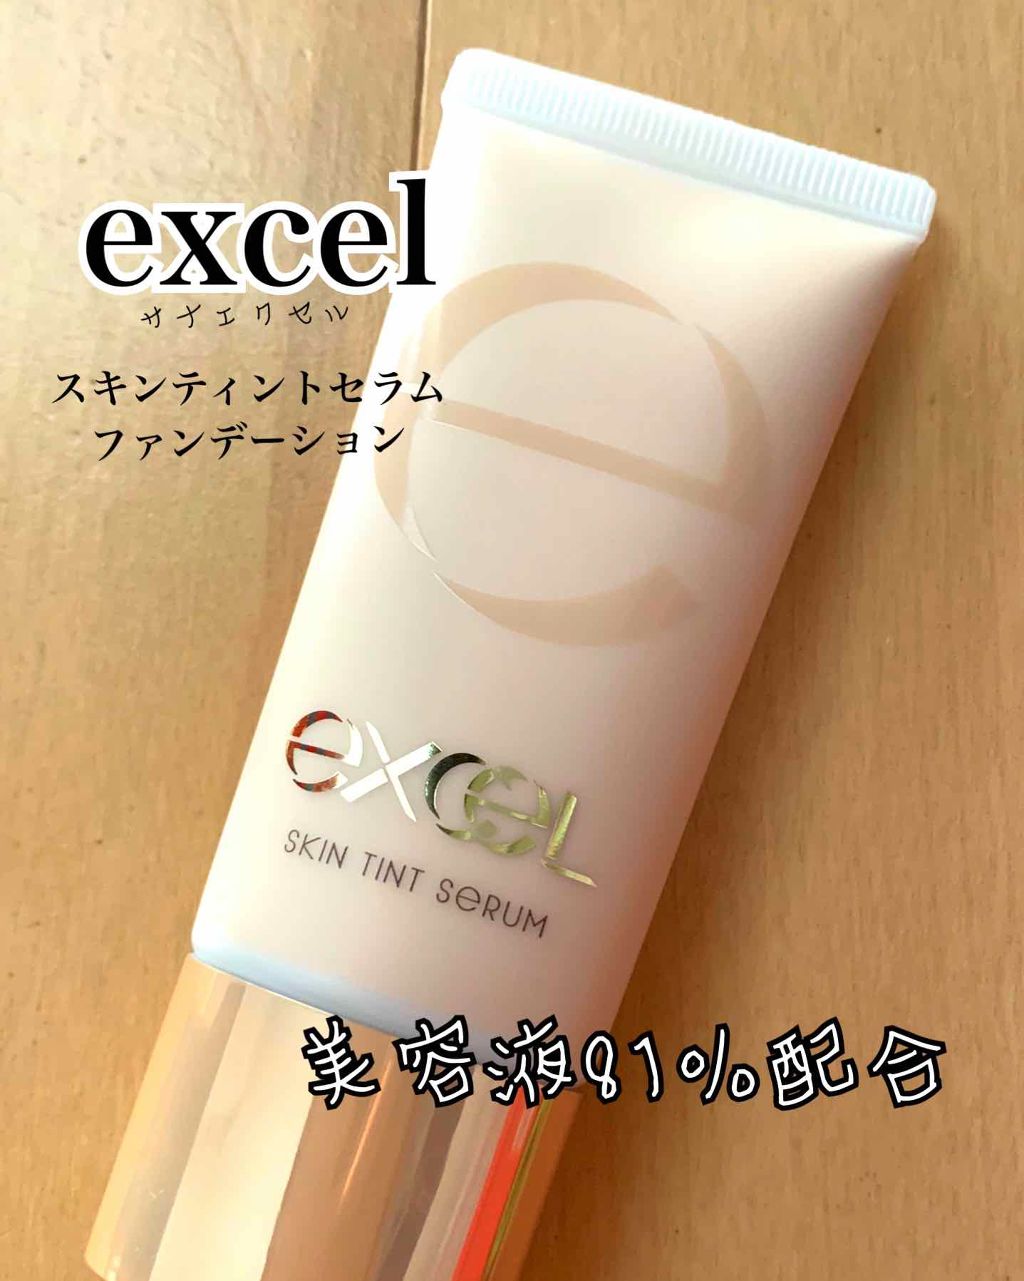 Excel(エクセル) エクセル スキンティントセラム ST04 ナチュラルオークル30